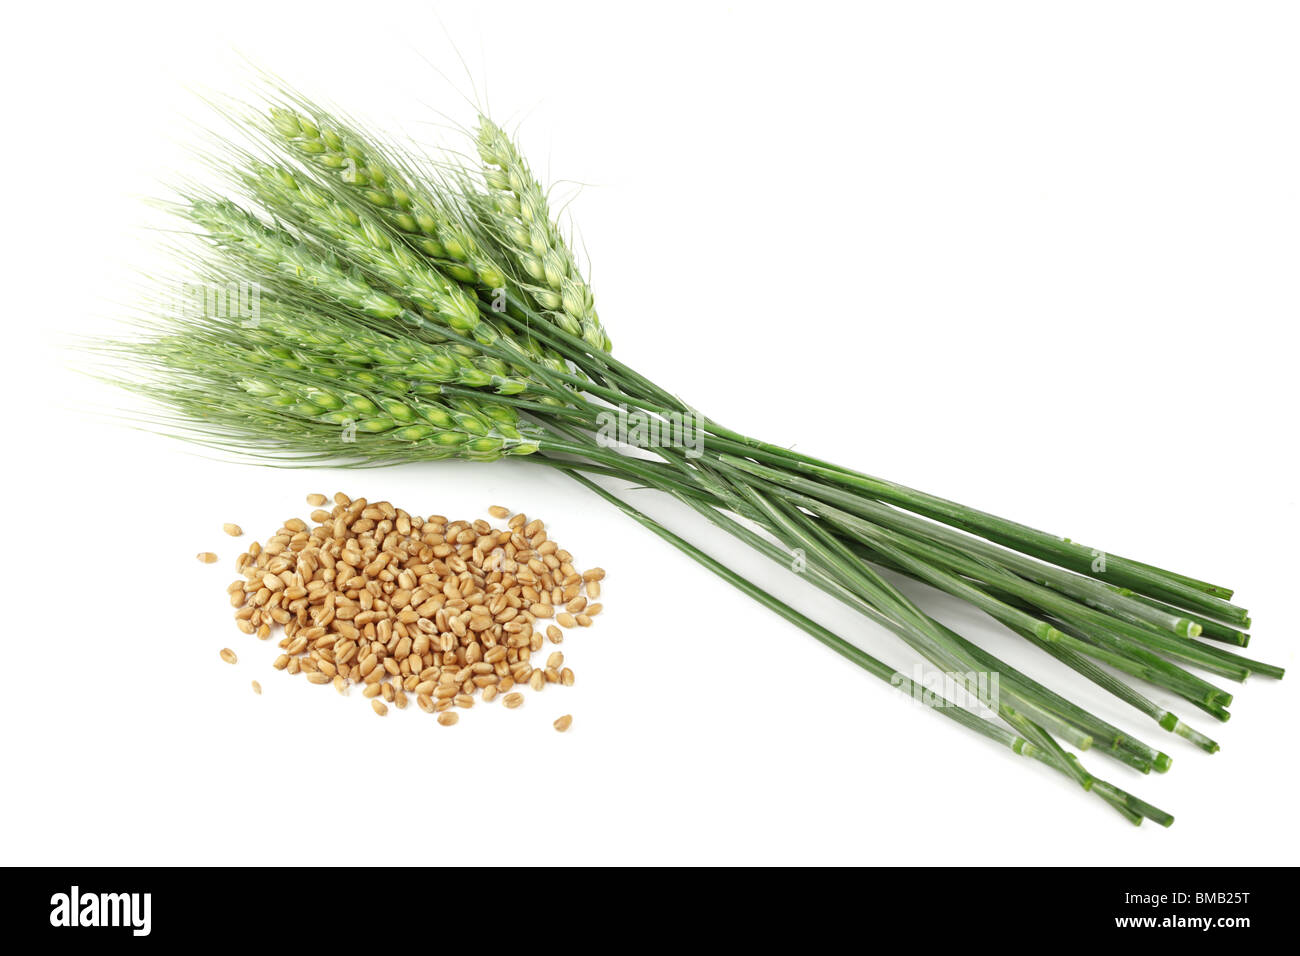 Les semences de blé et de plantes sur fond blanc Banque D'Images